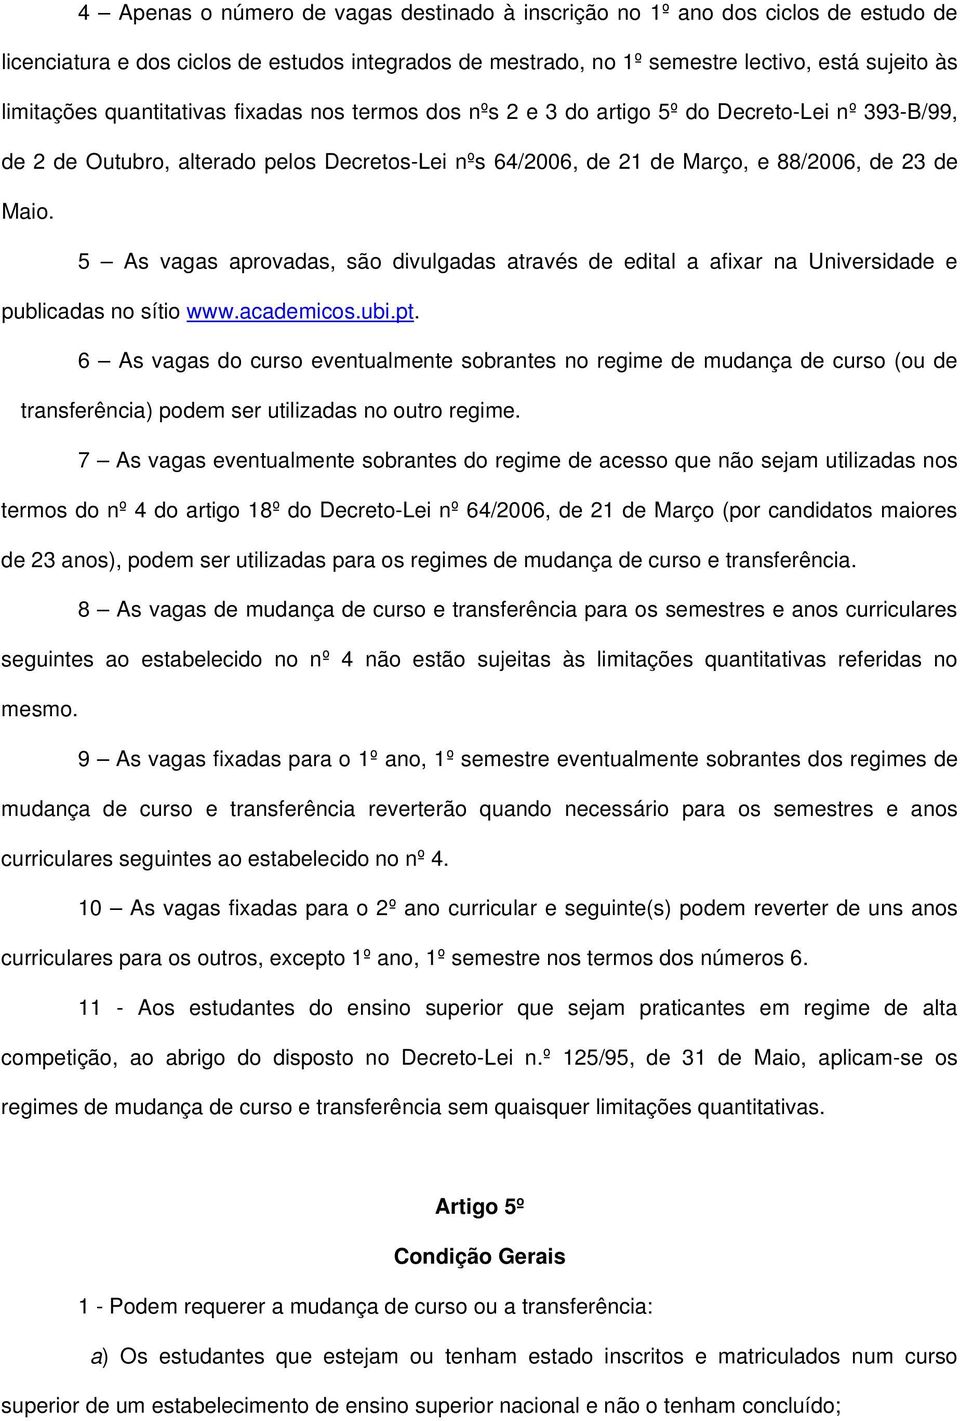 5 As vagas aprovadas, são divulgadas através de edital a afixar na Universidade e publicadas no sítio www.academicos.ubi.pt.